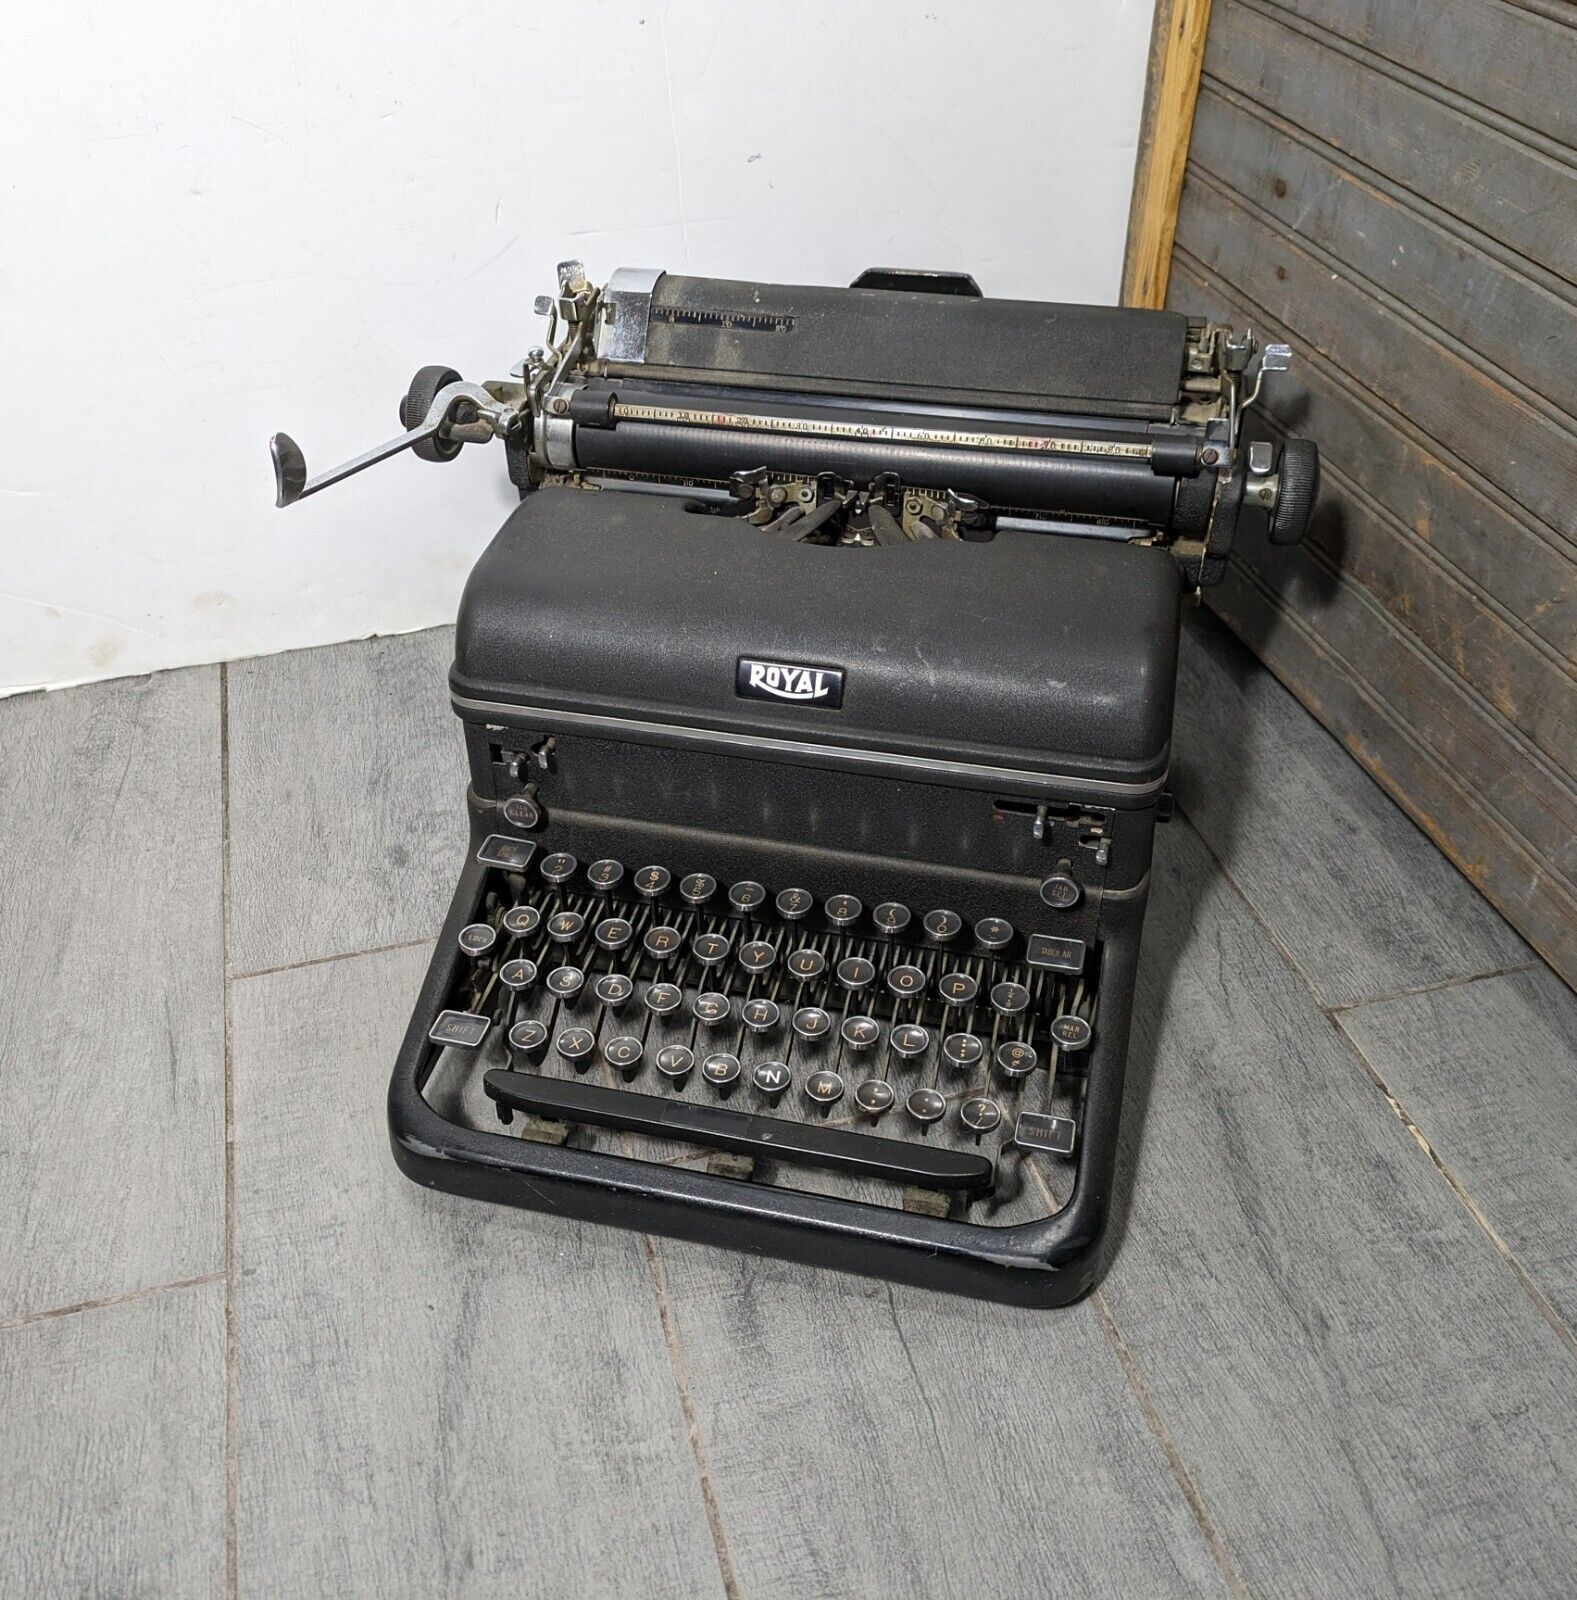 Antique 1940s Royal KMM Magic Margin Typewriter